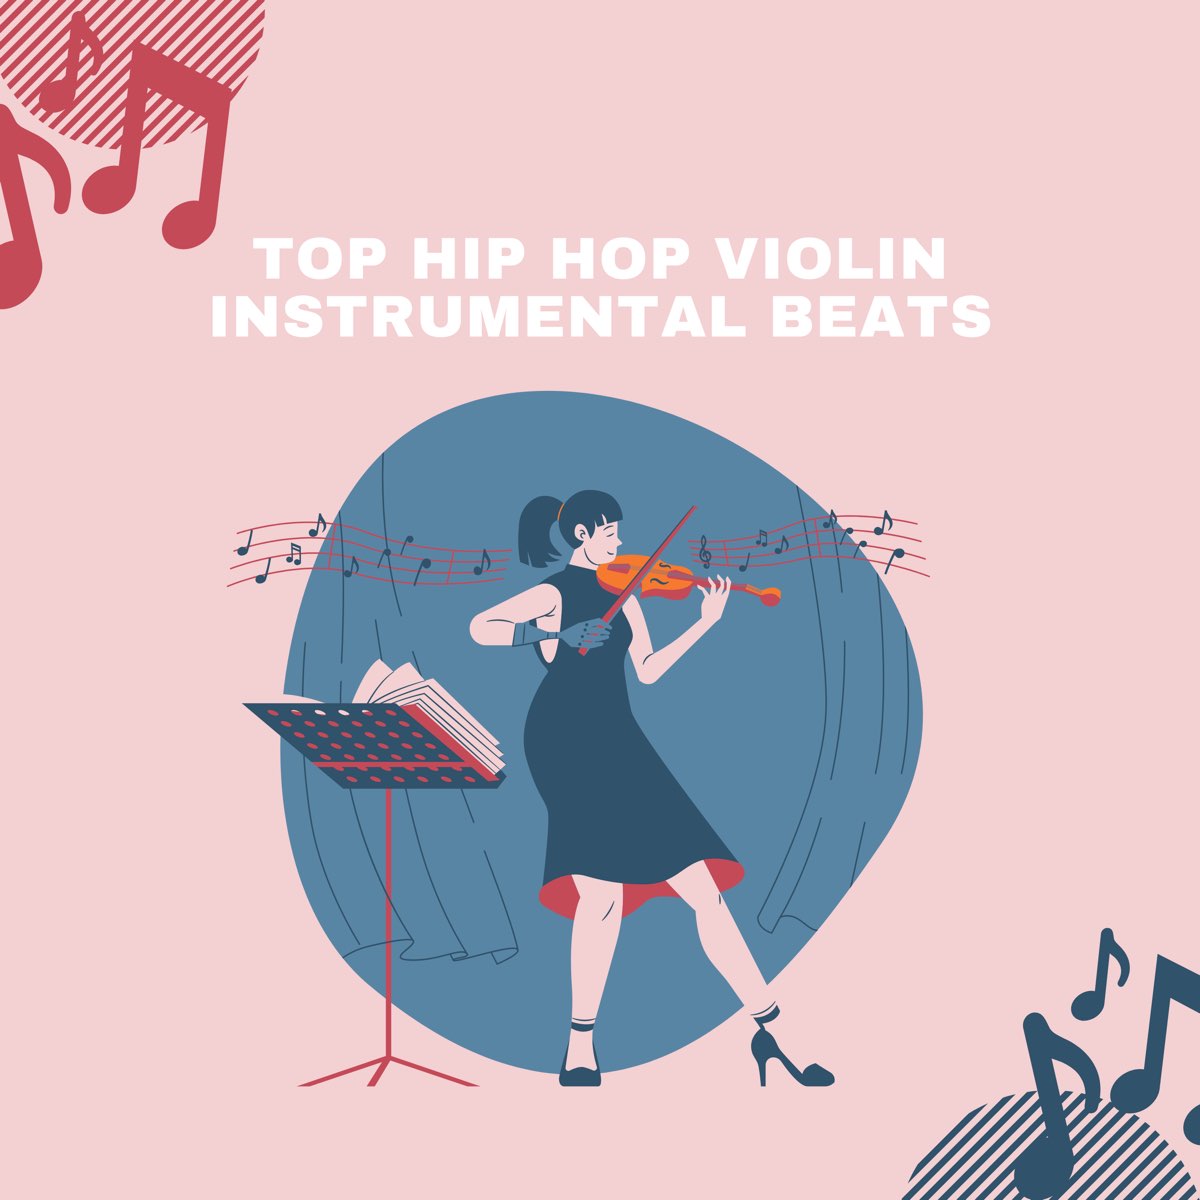 Serrado cartucho reptiles Top Hip Hop Violin Instrumental Beats de Instrumental Icons en Apple Music